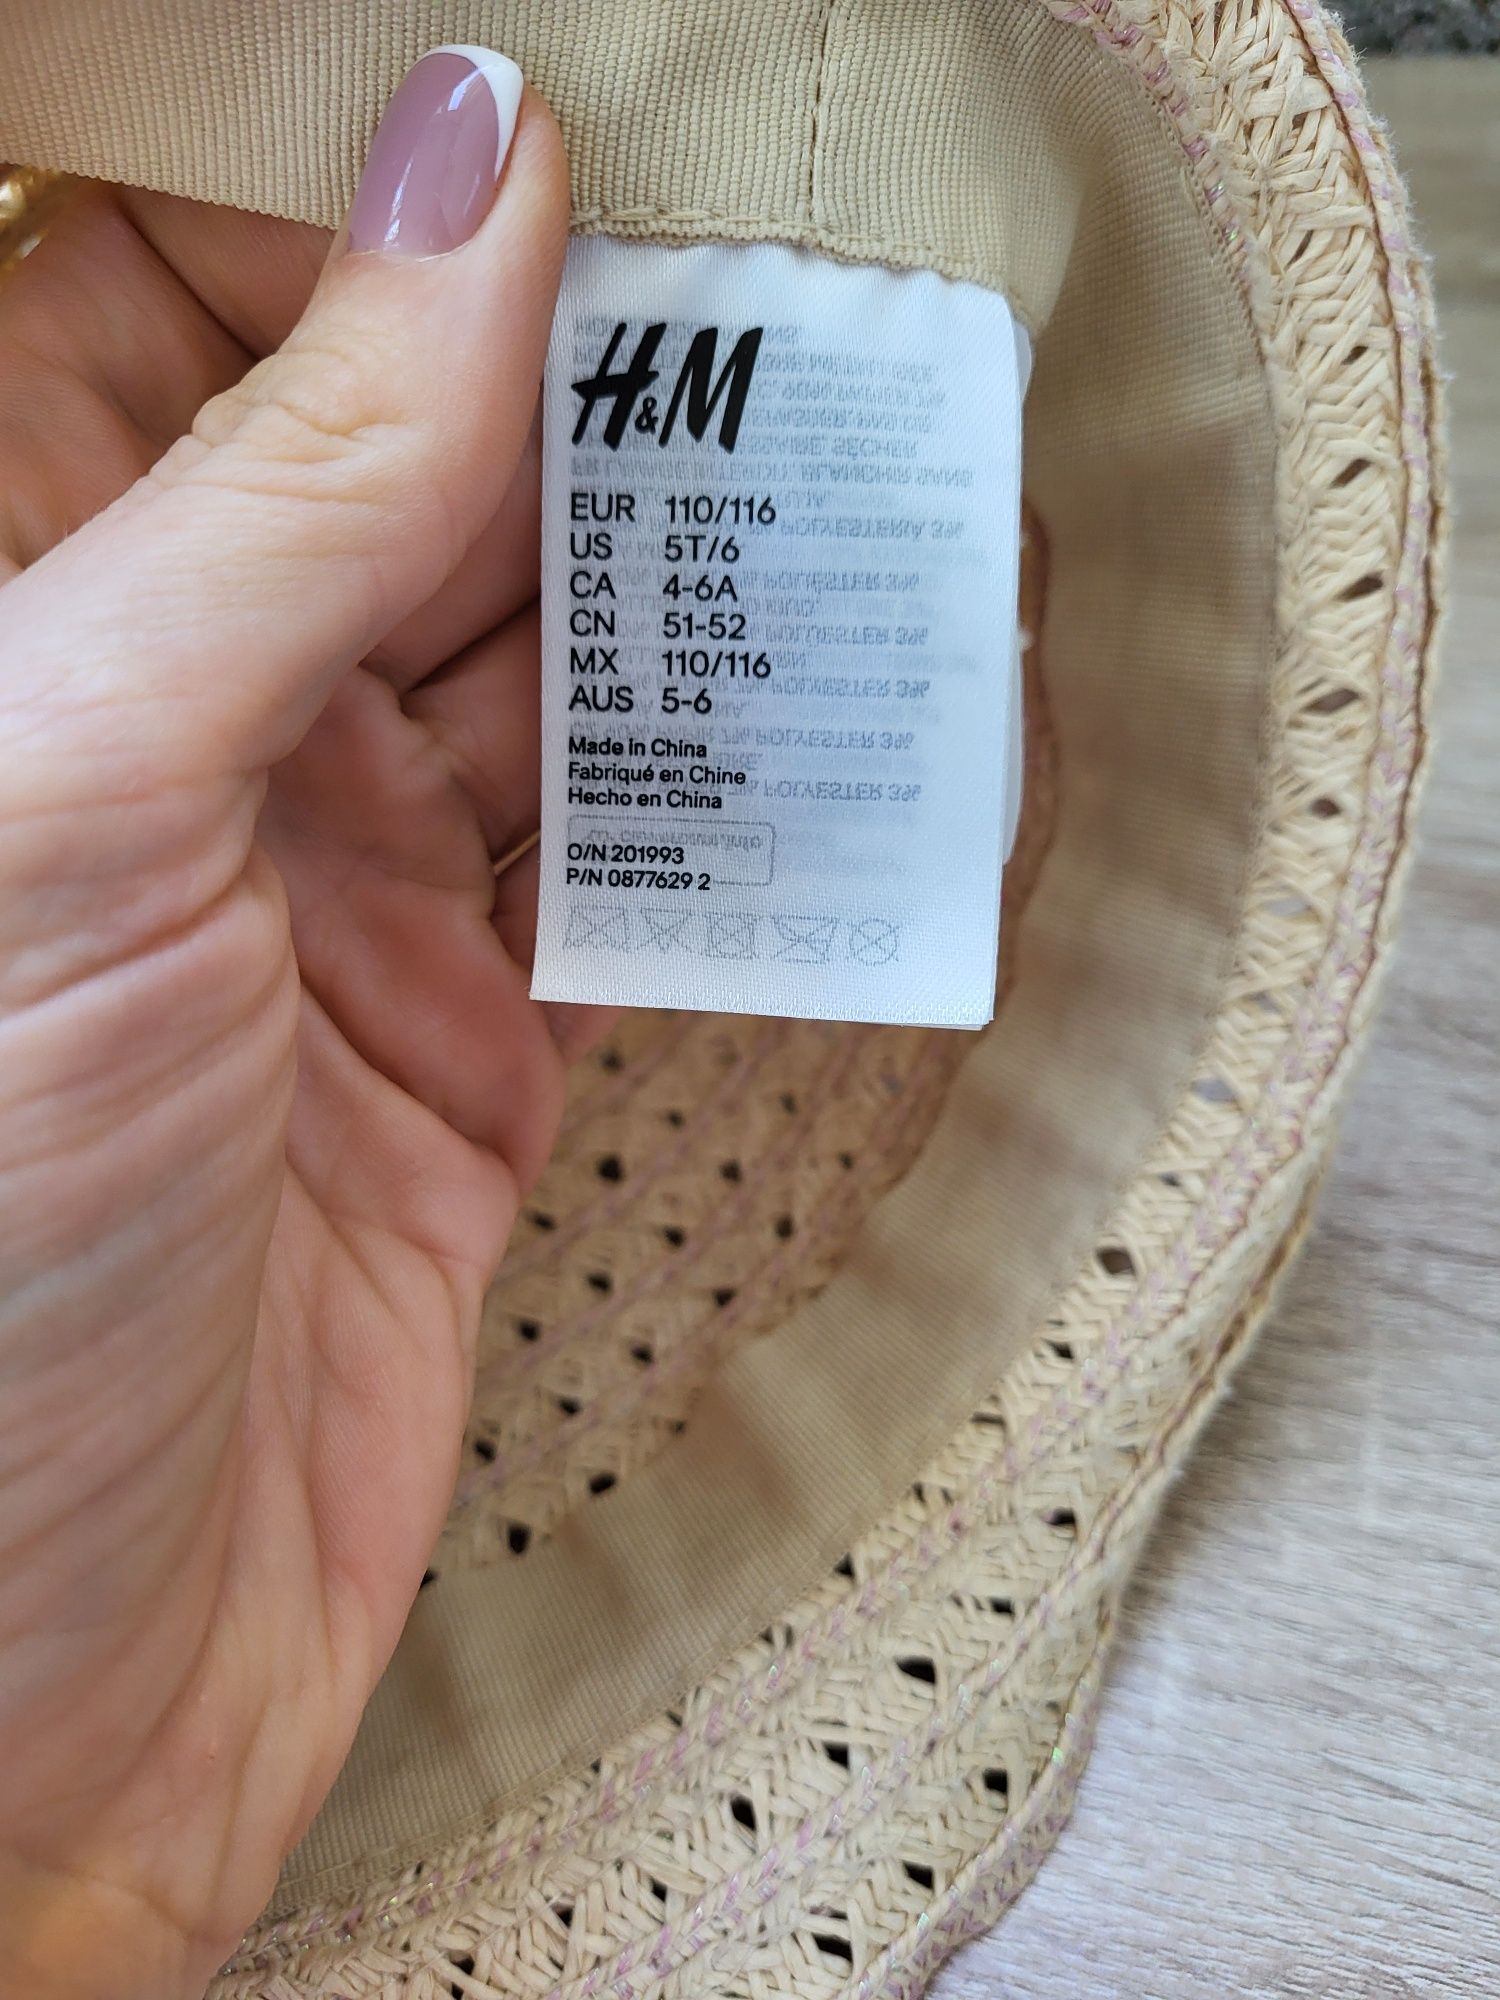 Соломеная панамка H&M, кепка, купальник на бассейн, 4-6 лет